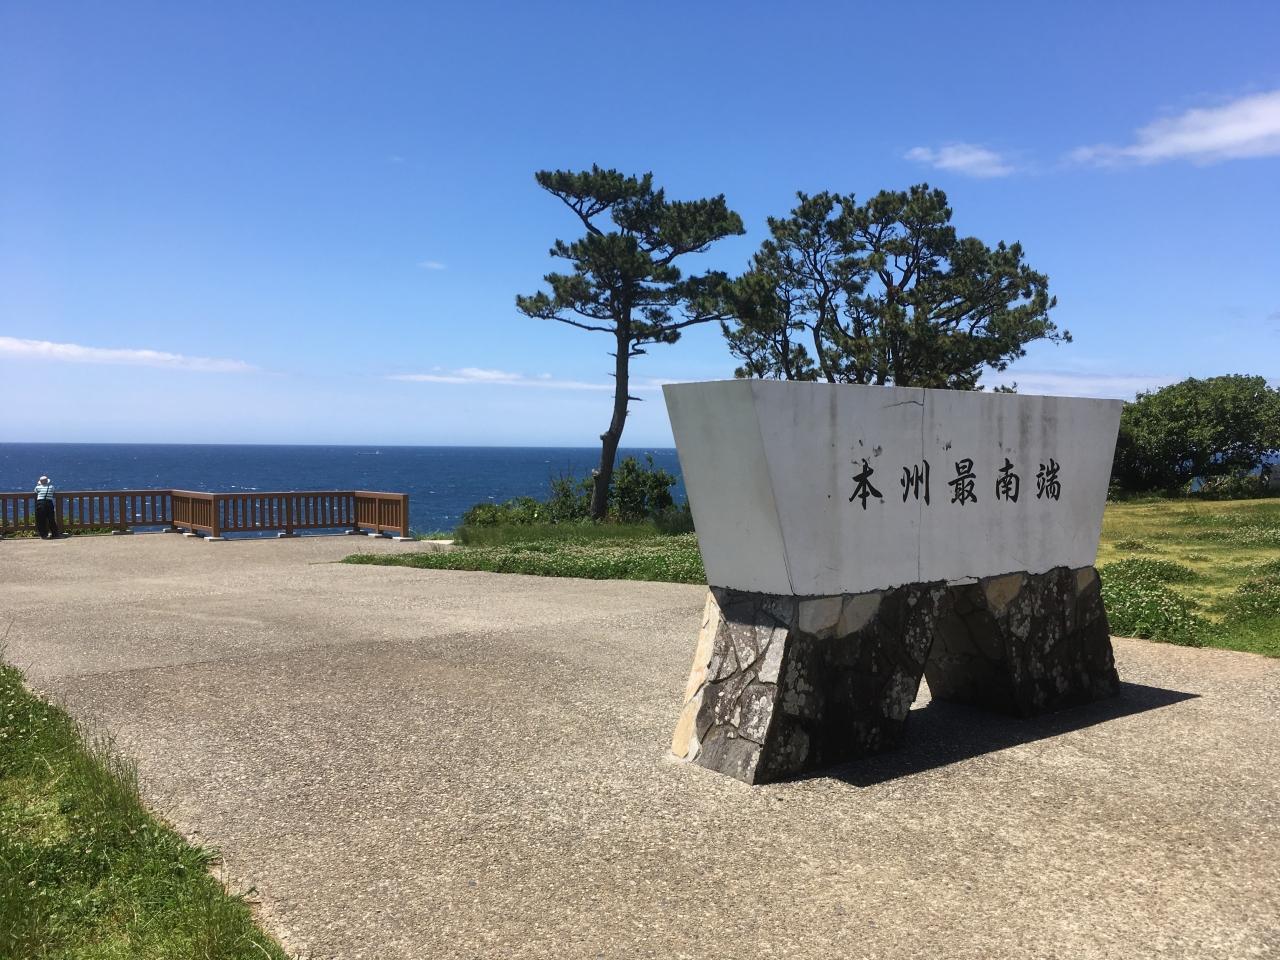 本州最南端まで往復370km 串本 古座川 和歌山県 の旅行記 ブログ By Inakaさん フォートラベル